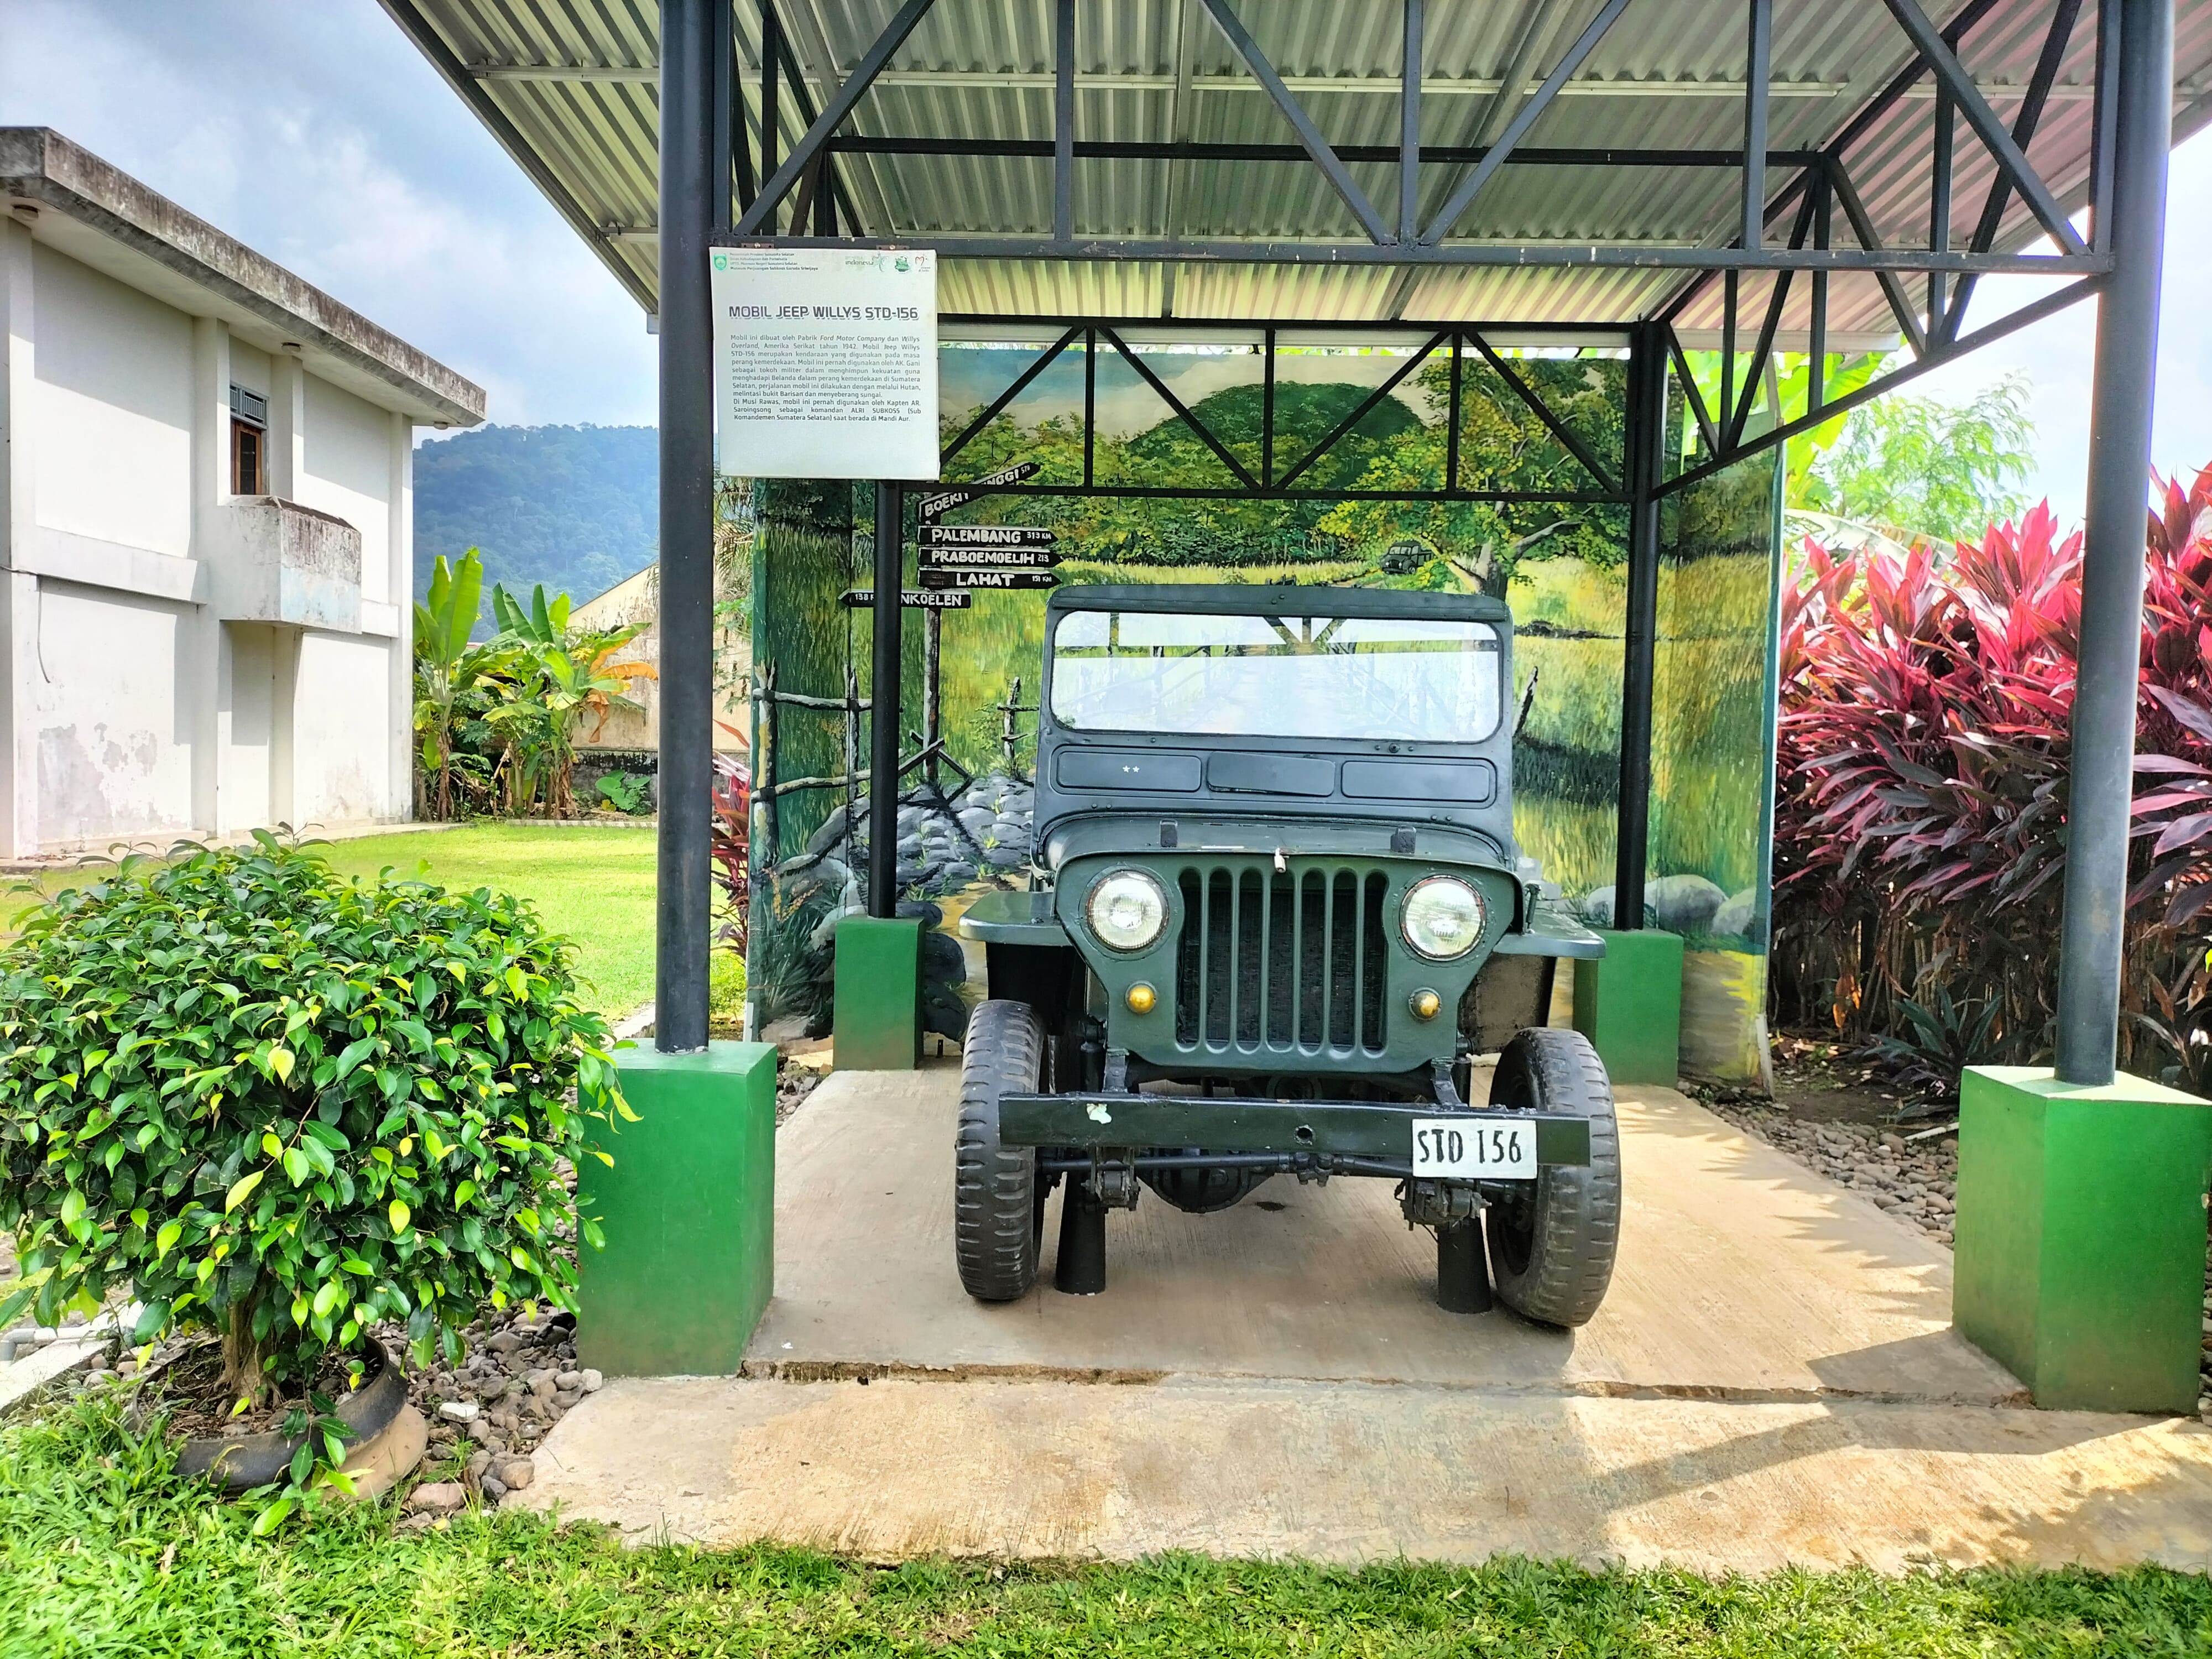 Mobil Jeep Wilys Ini Diberi Nama Tarzan,  Pernah Menaklukkan Bukit Barisan